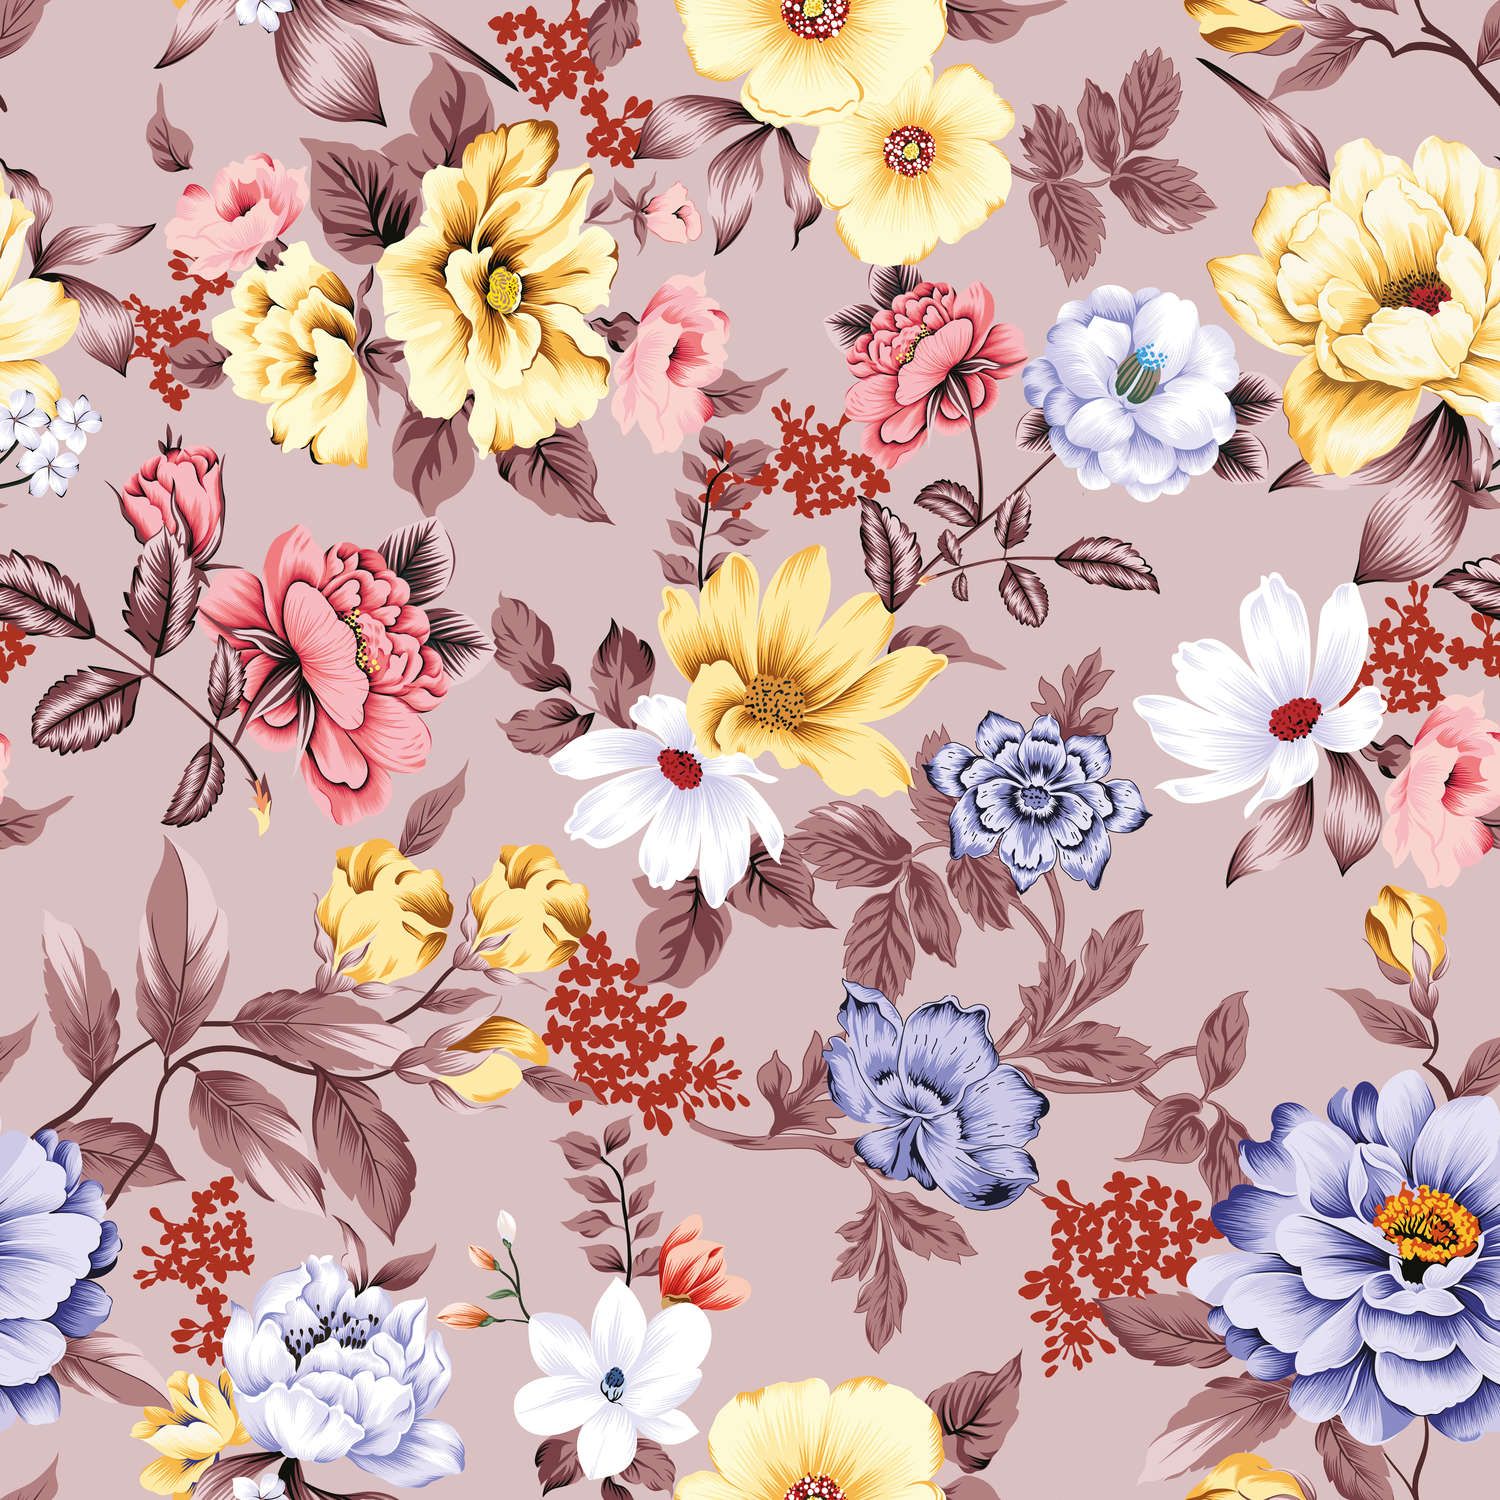             Digital behang gebloemd met bloemen en bladeren - Glad & mat vlies
        